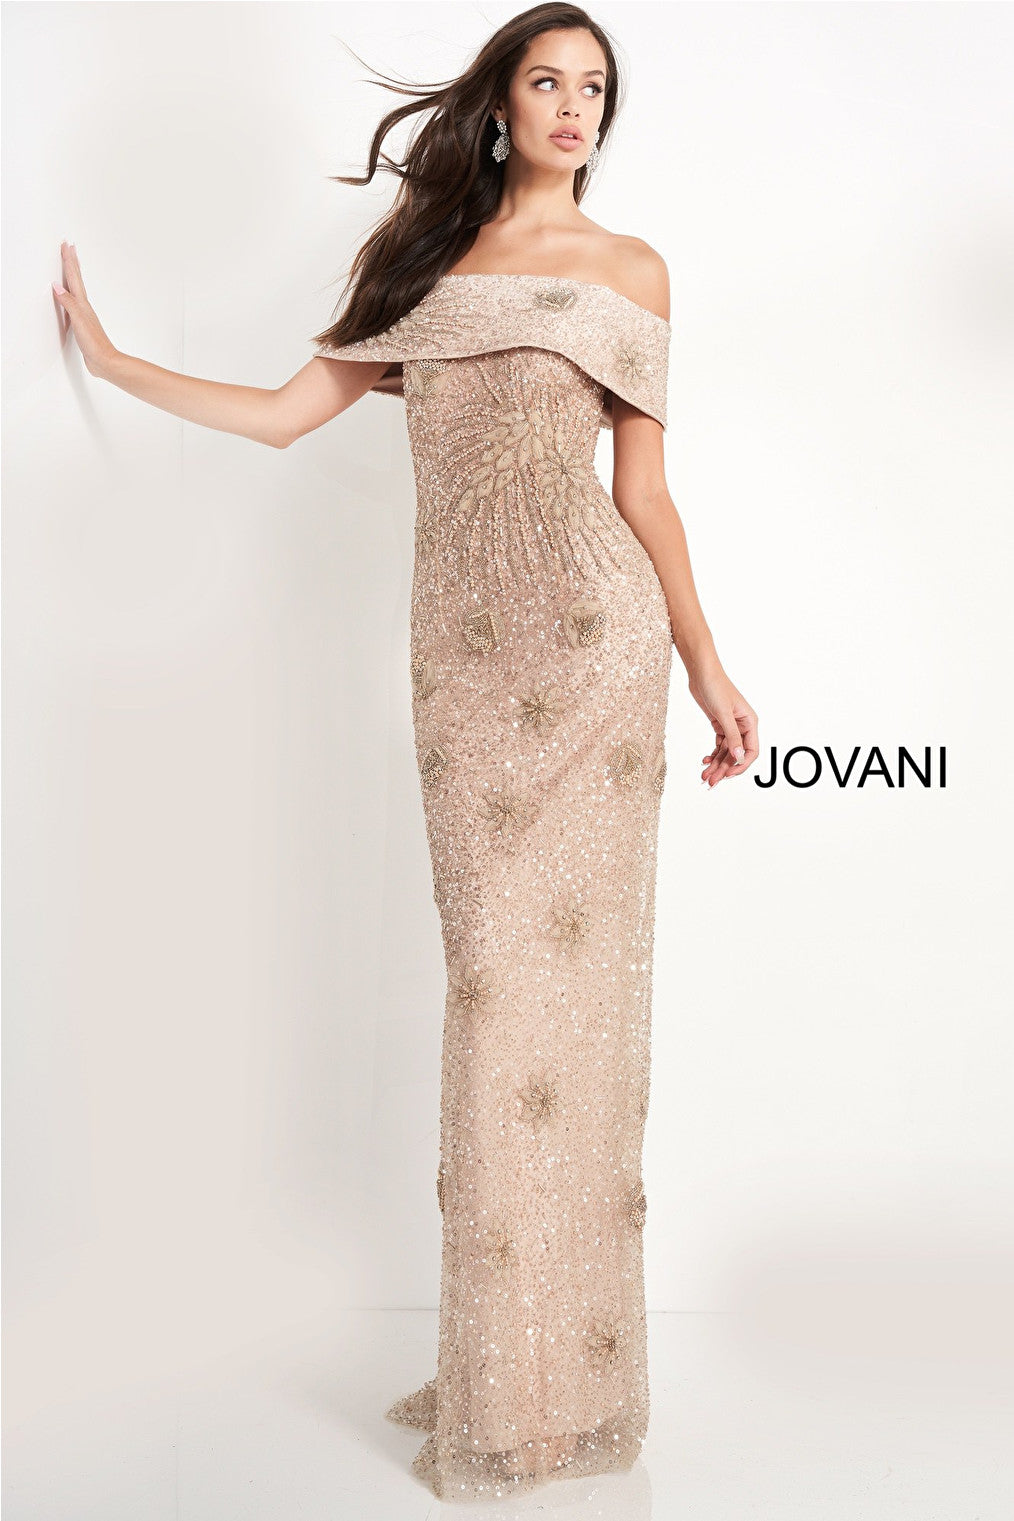 mob jovani dress 03412